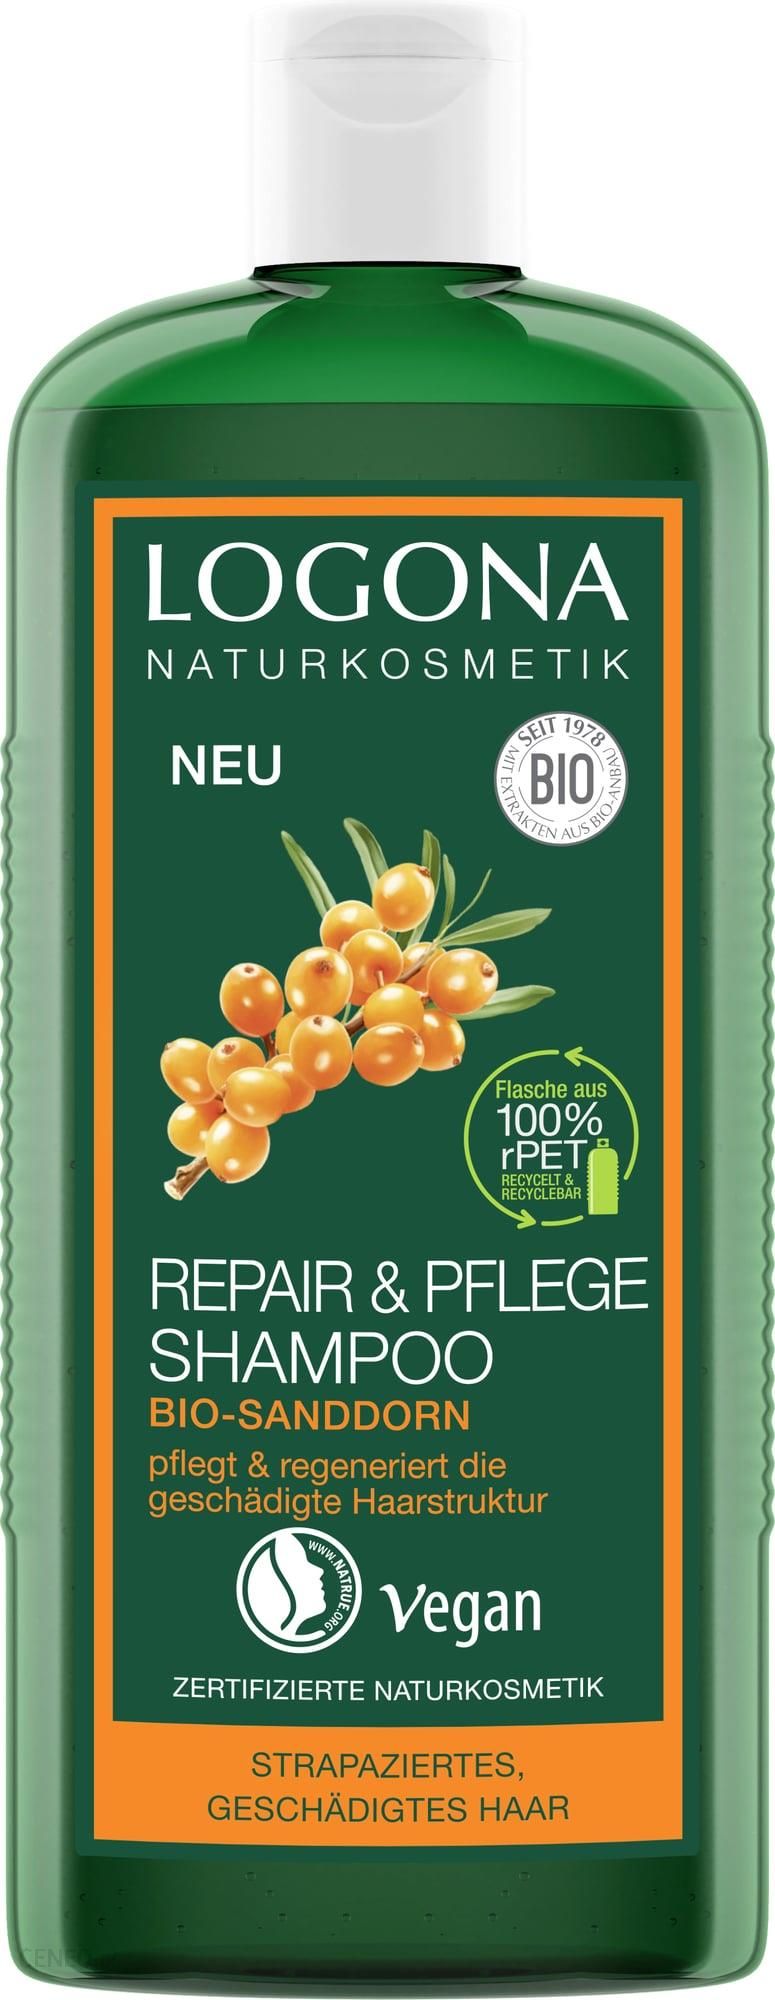 Logona Odnowa i pielęgnacja szampon z organicznym rokitnikiem 200ml